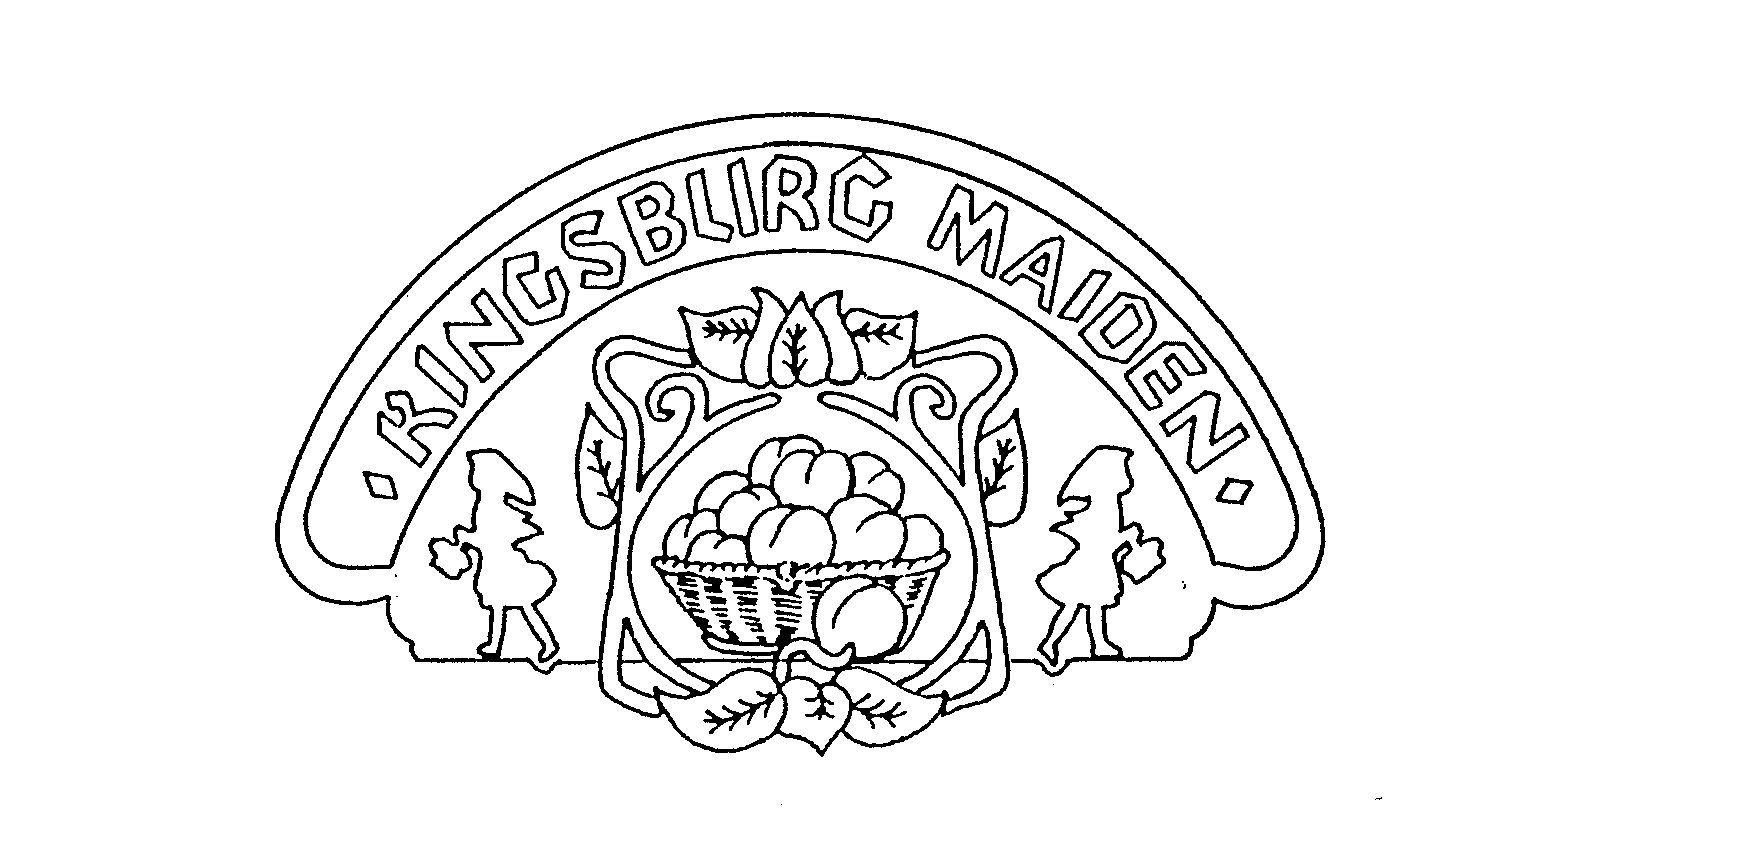  KINGSBURG MAIDEN